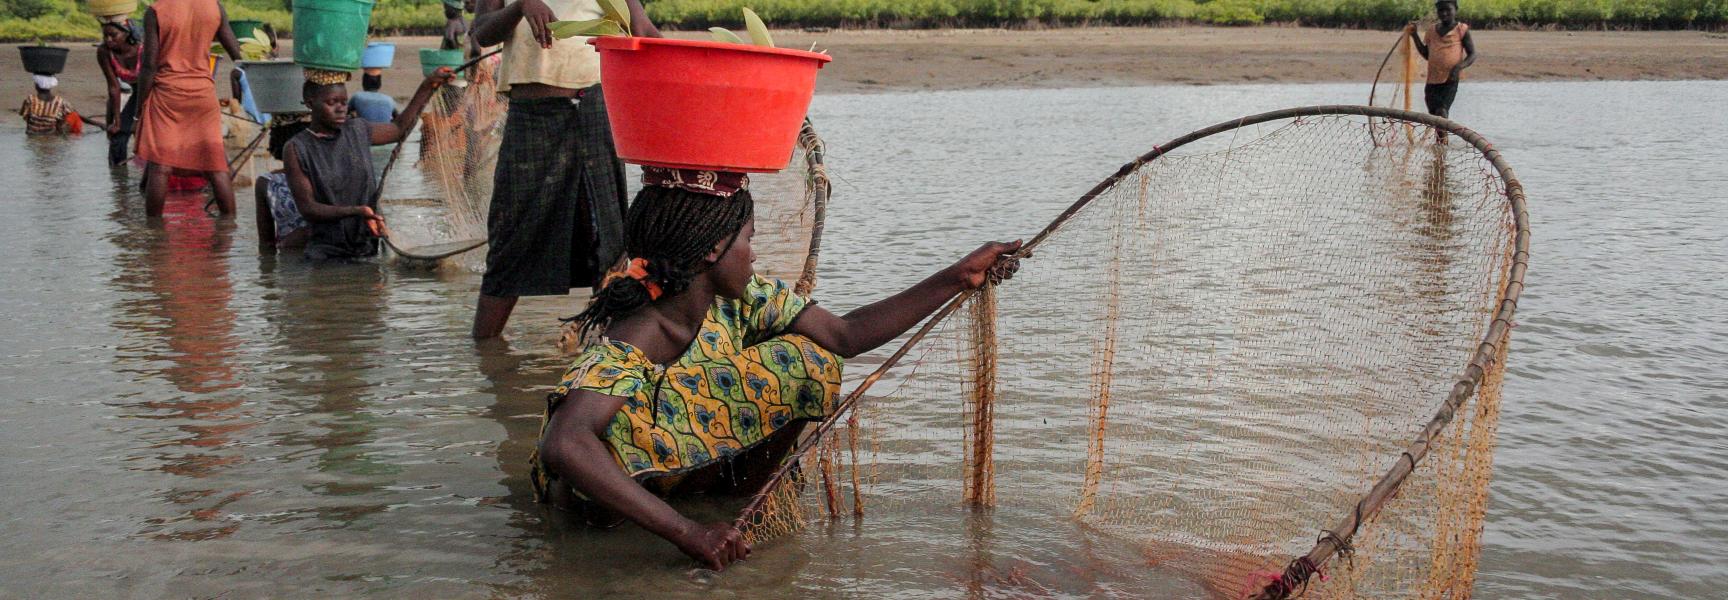 Mujeres pescando en Guinea Bissau